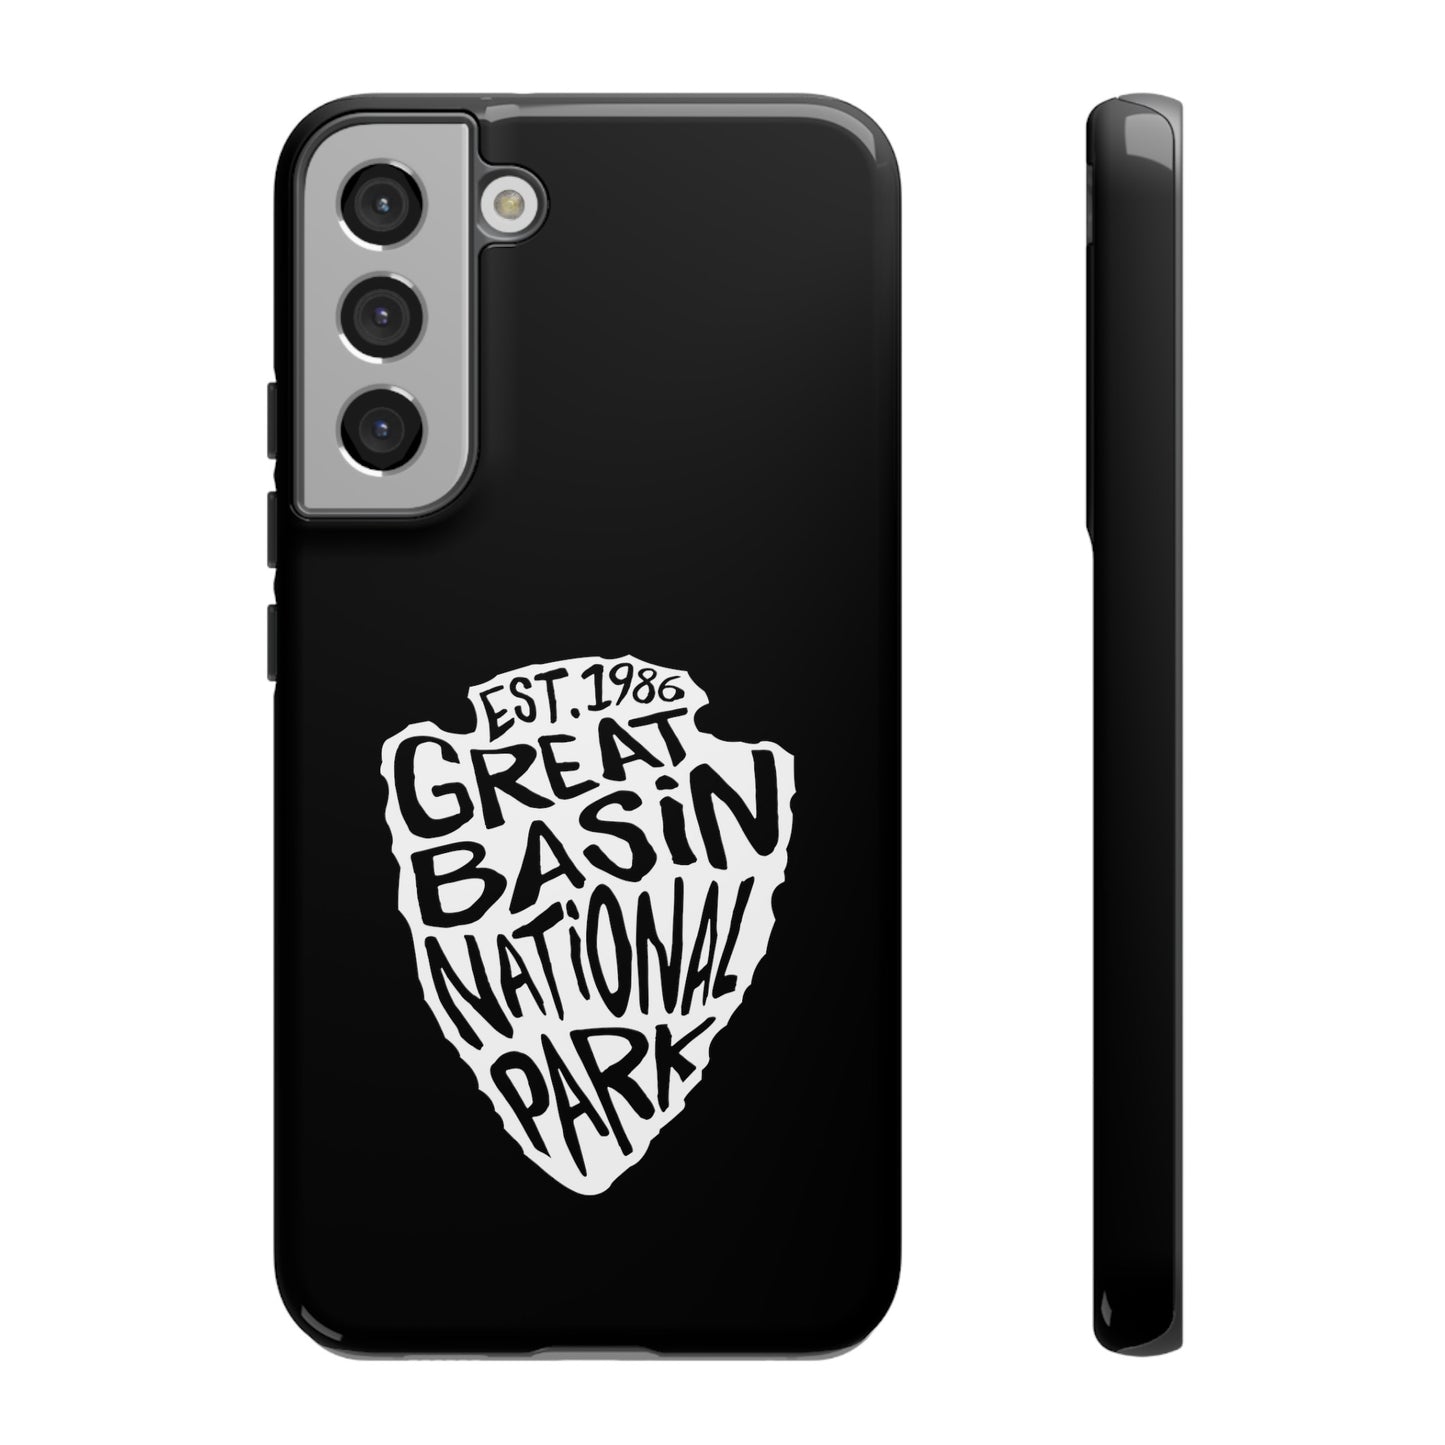 Great Basin National Park Phone Case - Arrowhead Design